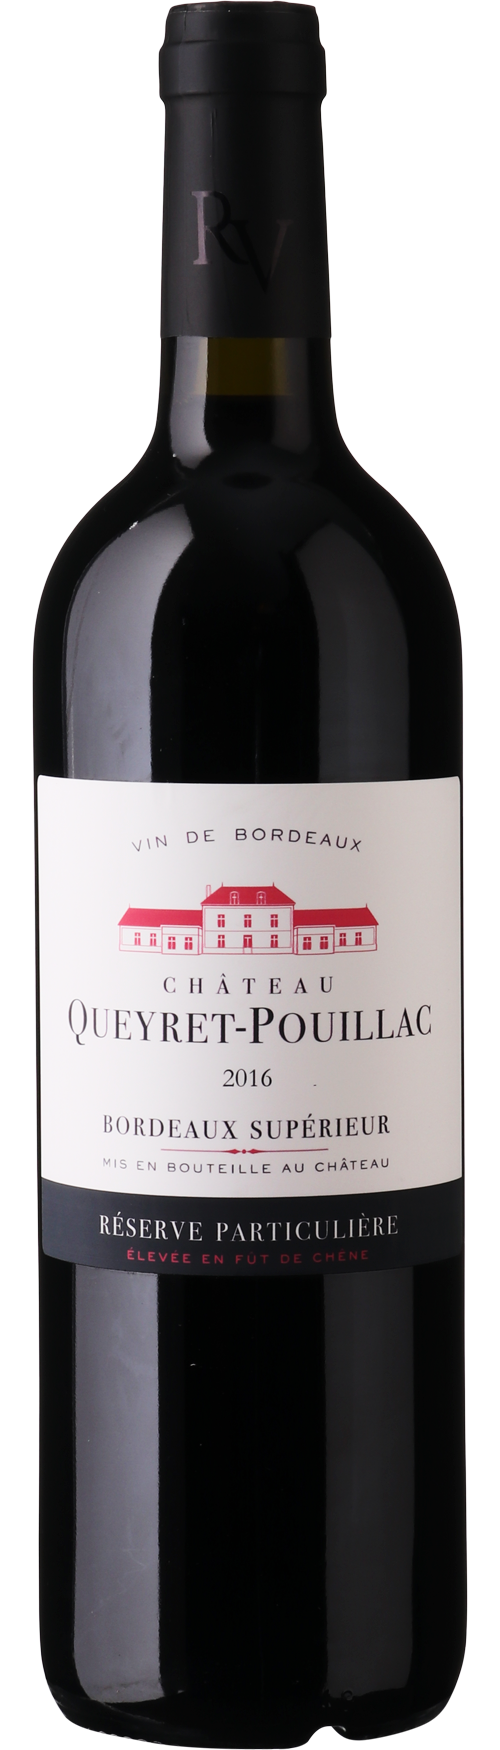 Chateau Queyret-Pouillac Bordeaux Superior Reserve Particuliere 2016 - Bloom Concept